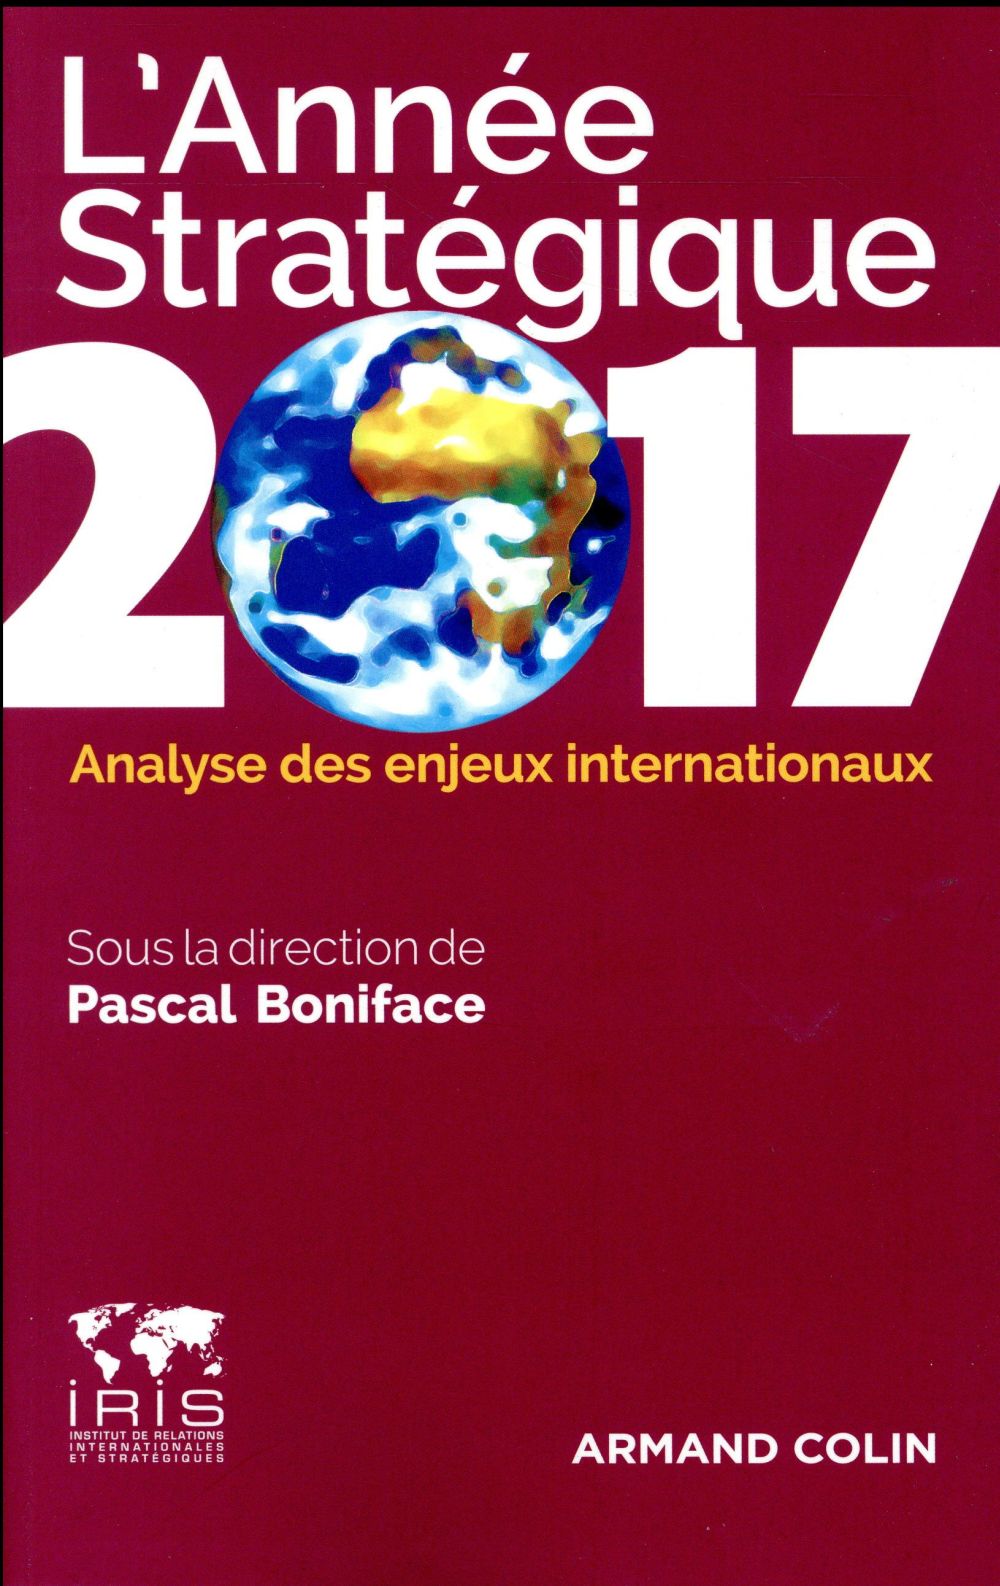 L'ANNEE STRATEGIQUE 2017 - ANALYSE DES ENJEUX INTERNATIONAUX